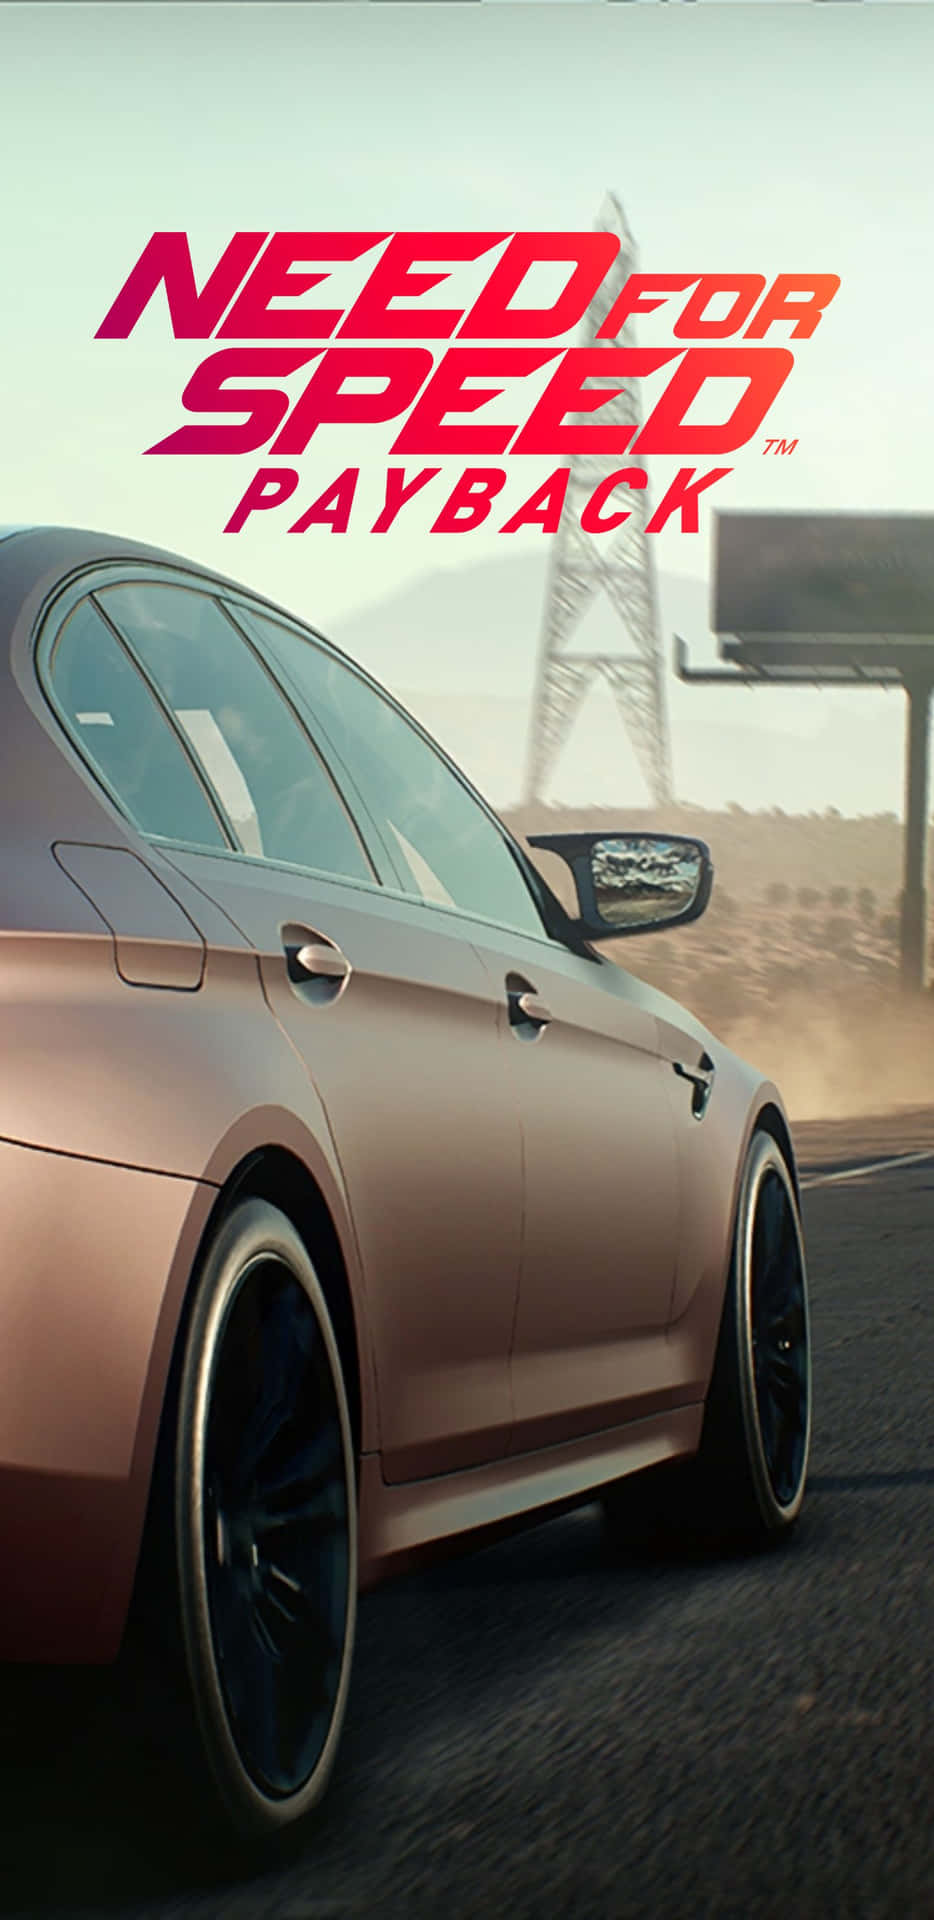 Upptäckspänningen På Racerbanan I Need For Speed Payback På Pixel 3 Xl.